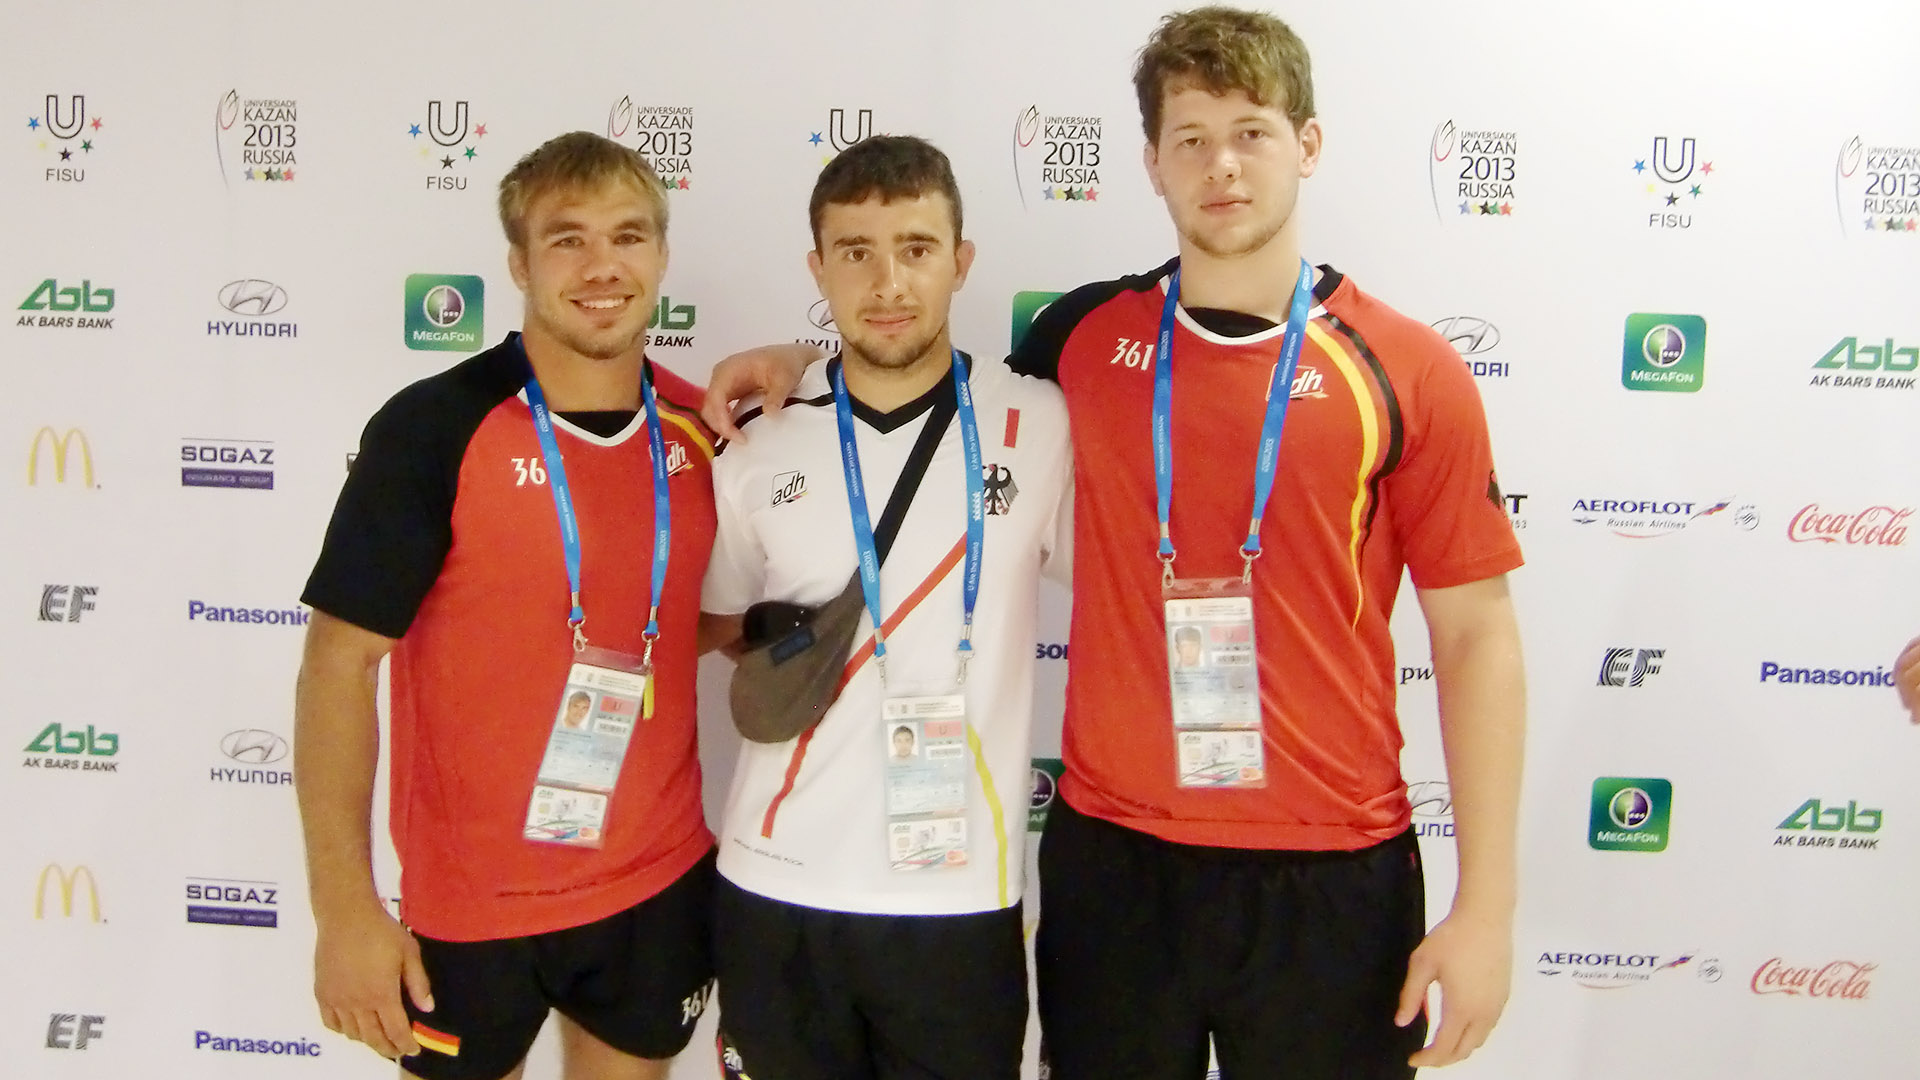 Ringer vom RSV-Rotation Greiz bei der Sommer-Universiade 2013 in Kazan